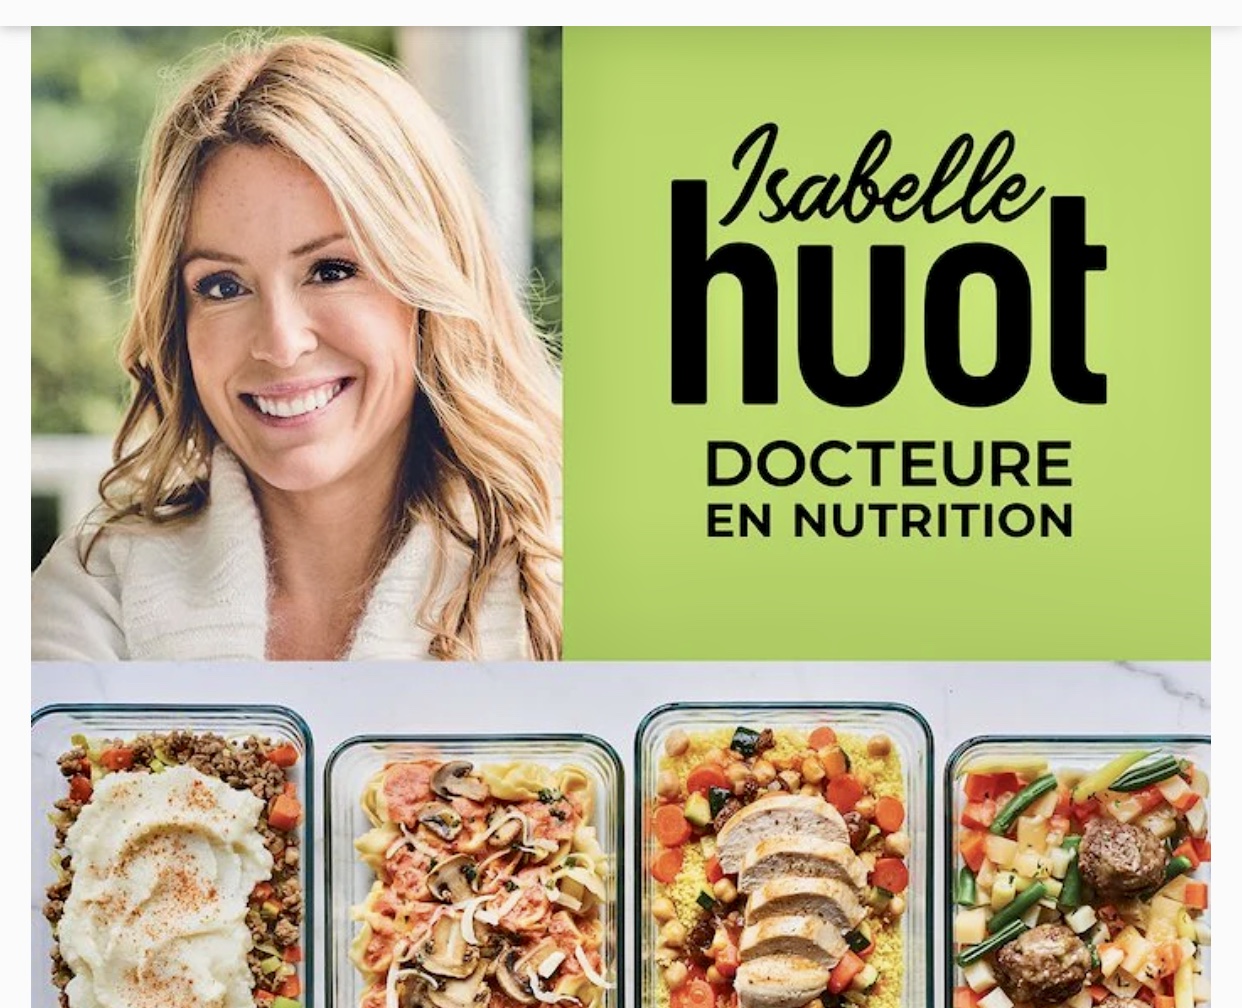 Jacqueline Hout est docteure en nutrition.